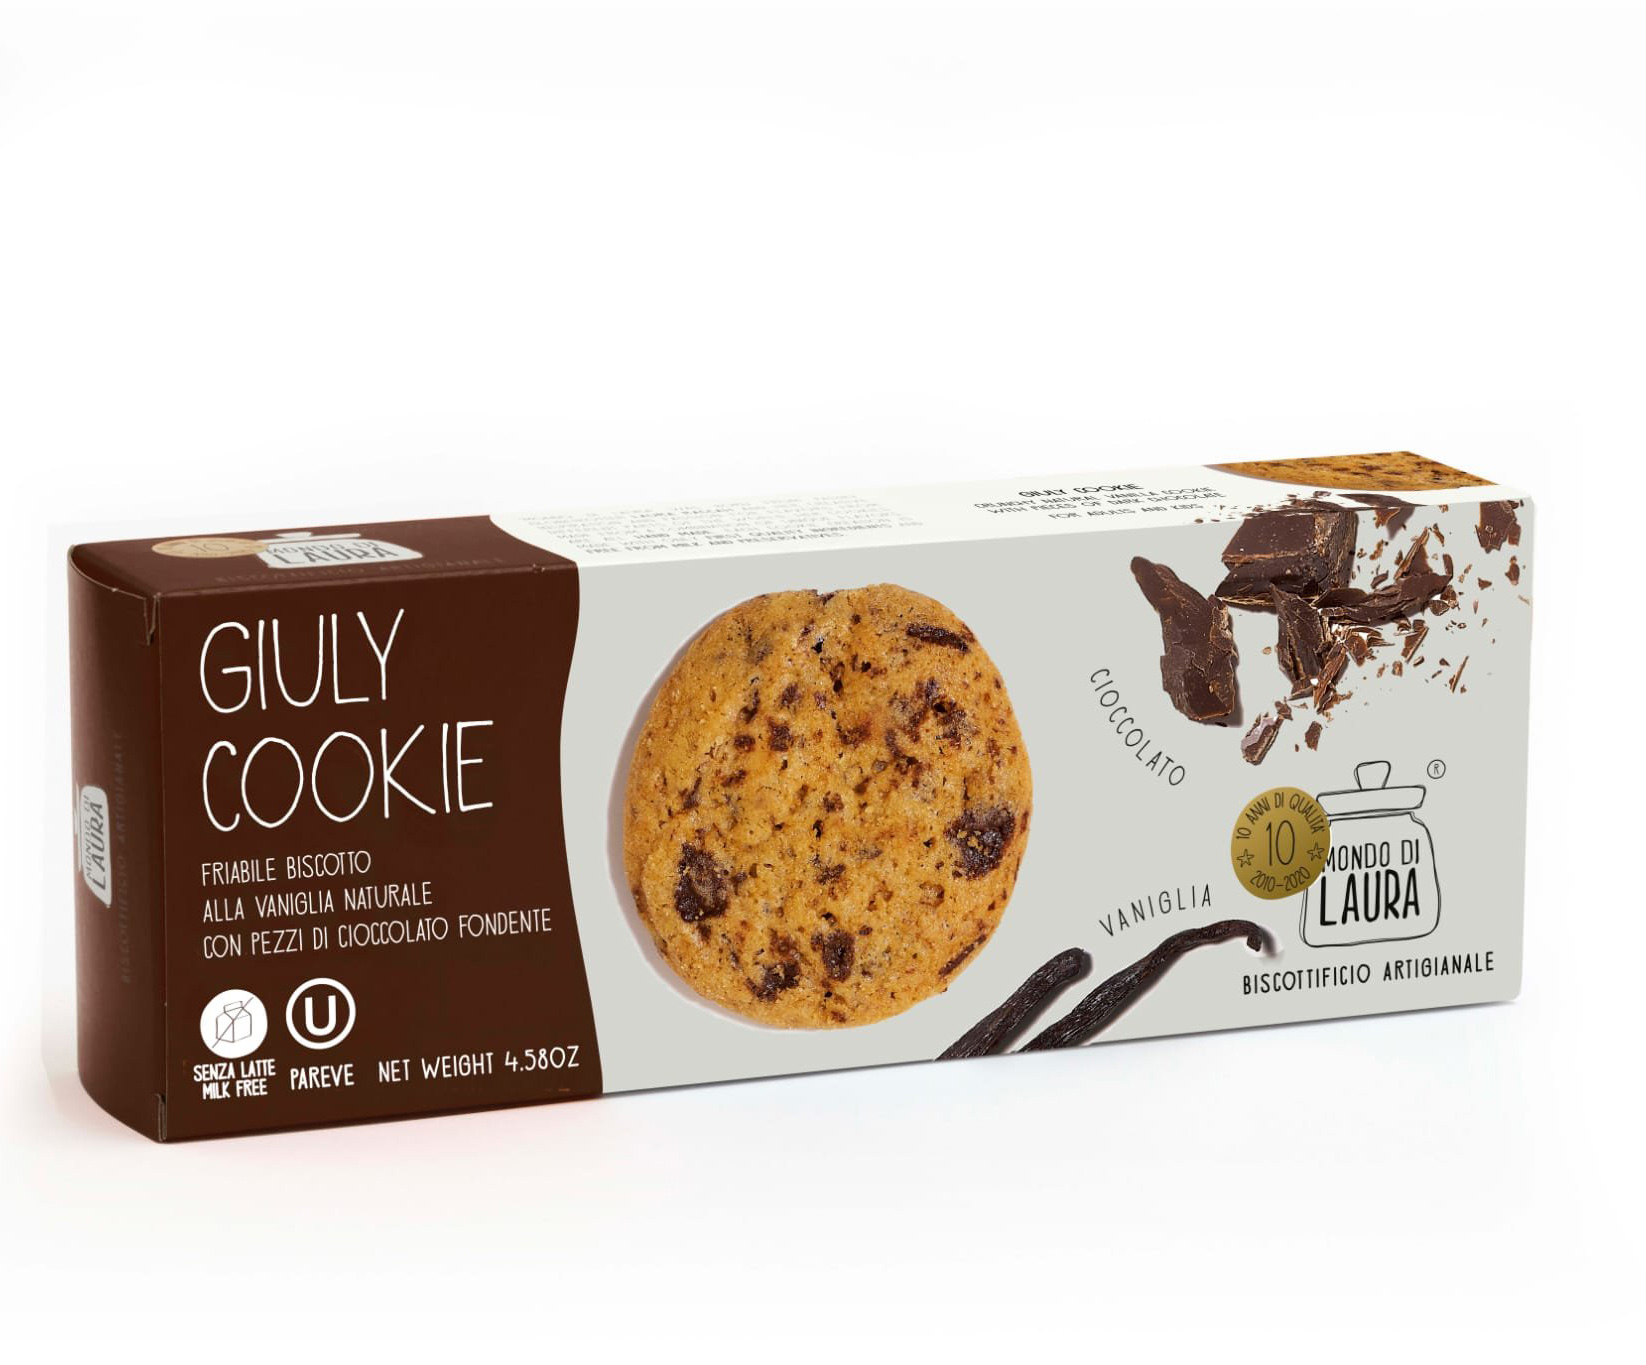 Biscuiti artizanali - Giuly Cookie | Mondo di Laura